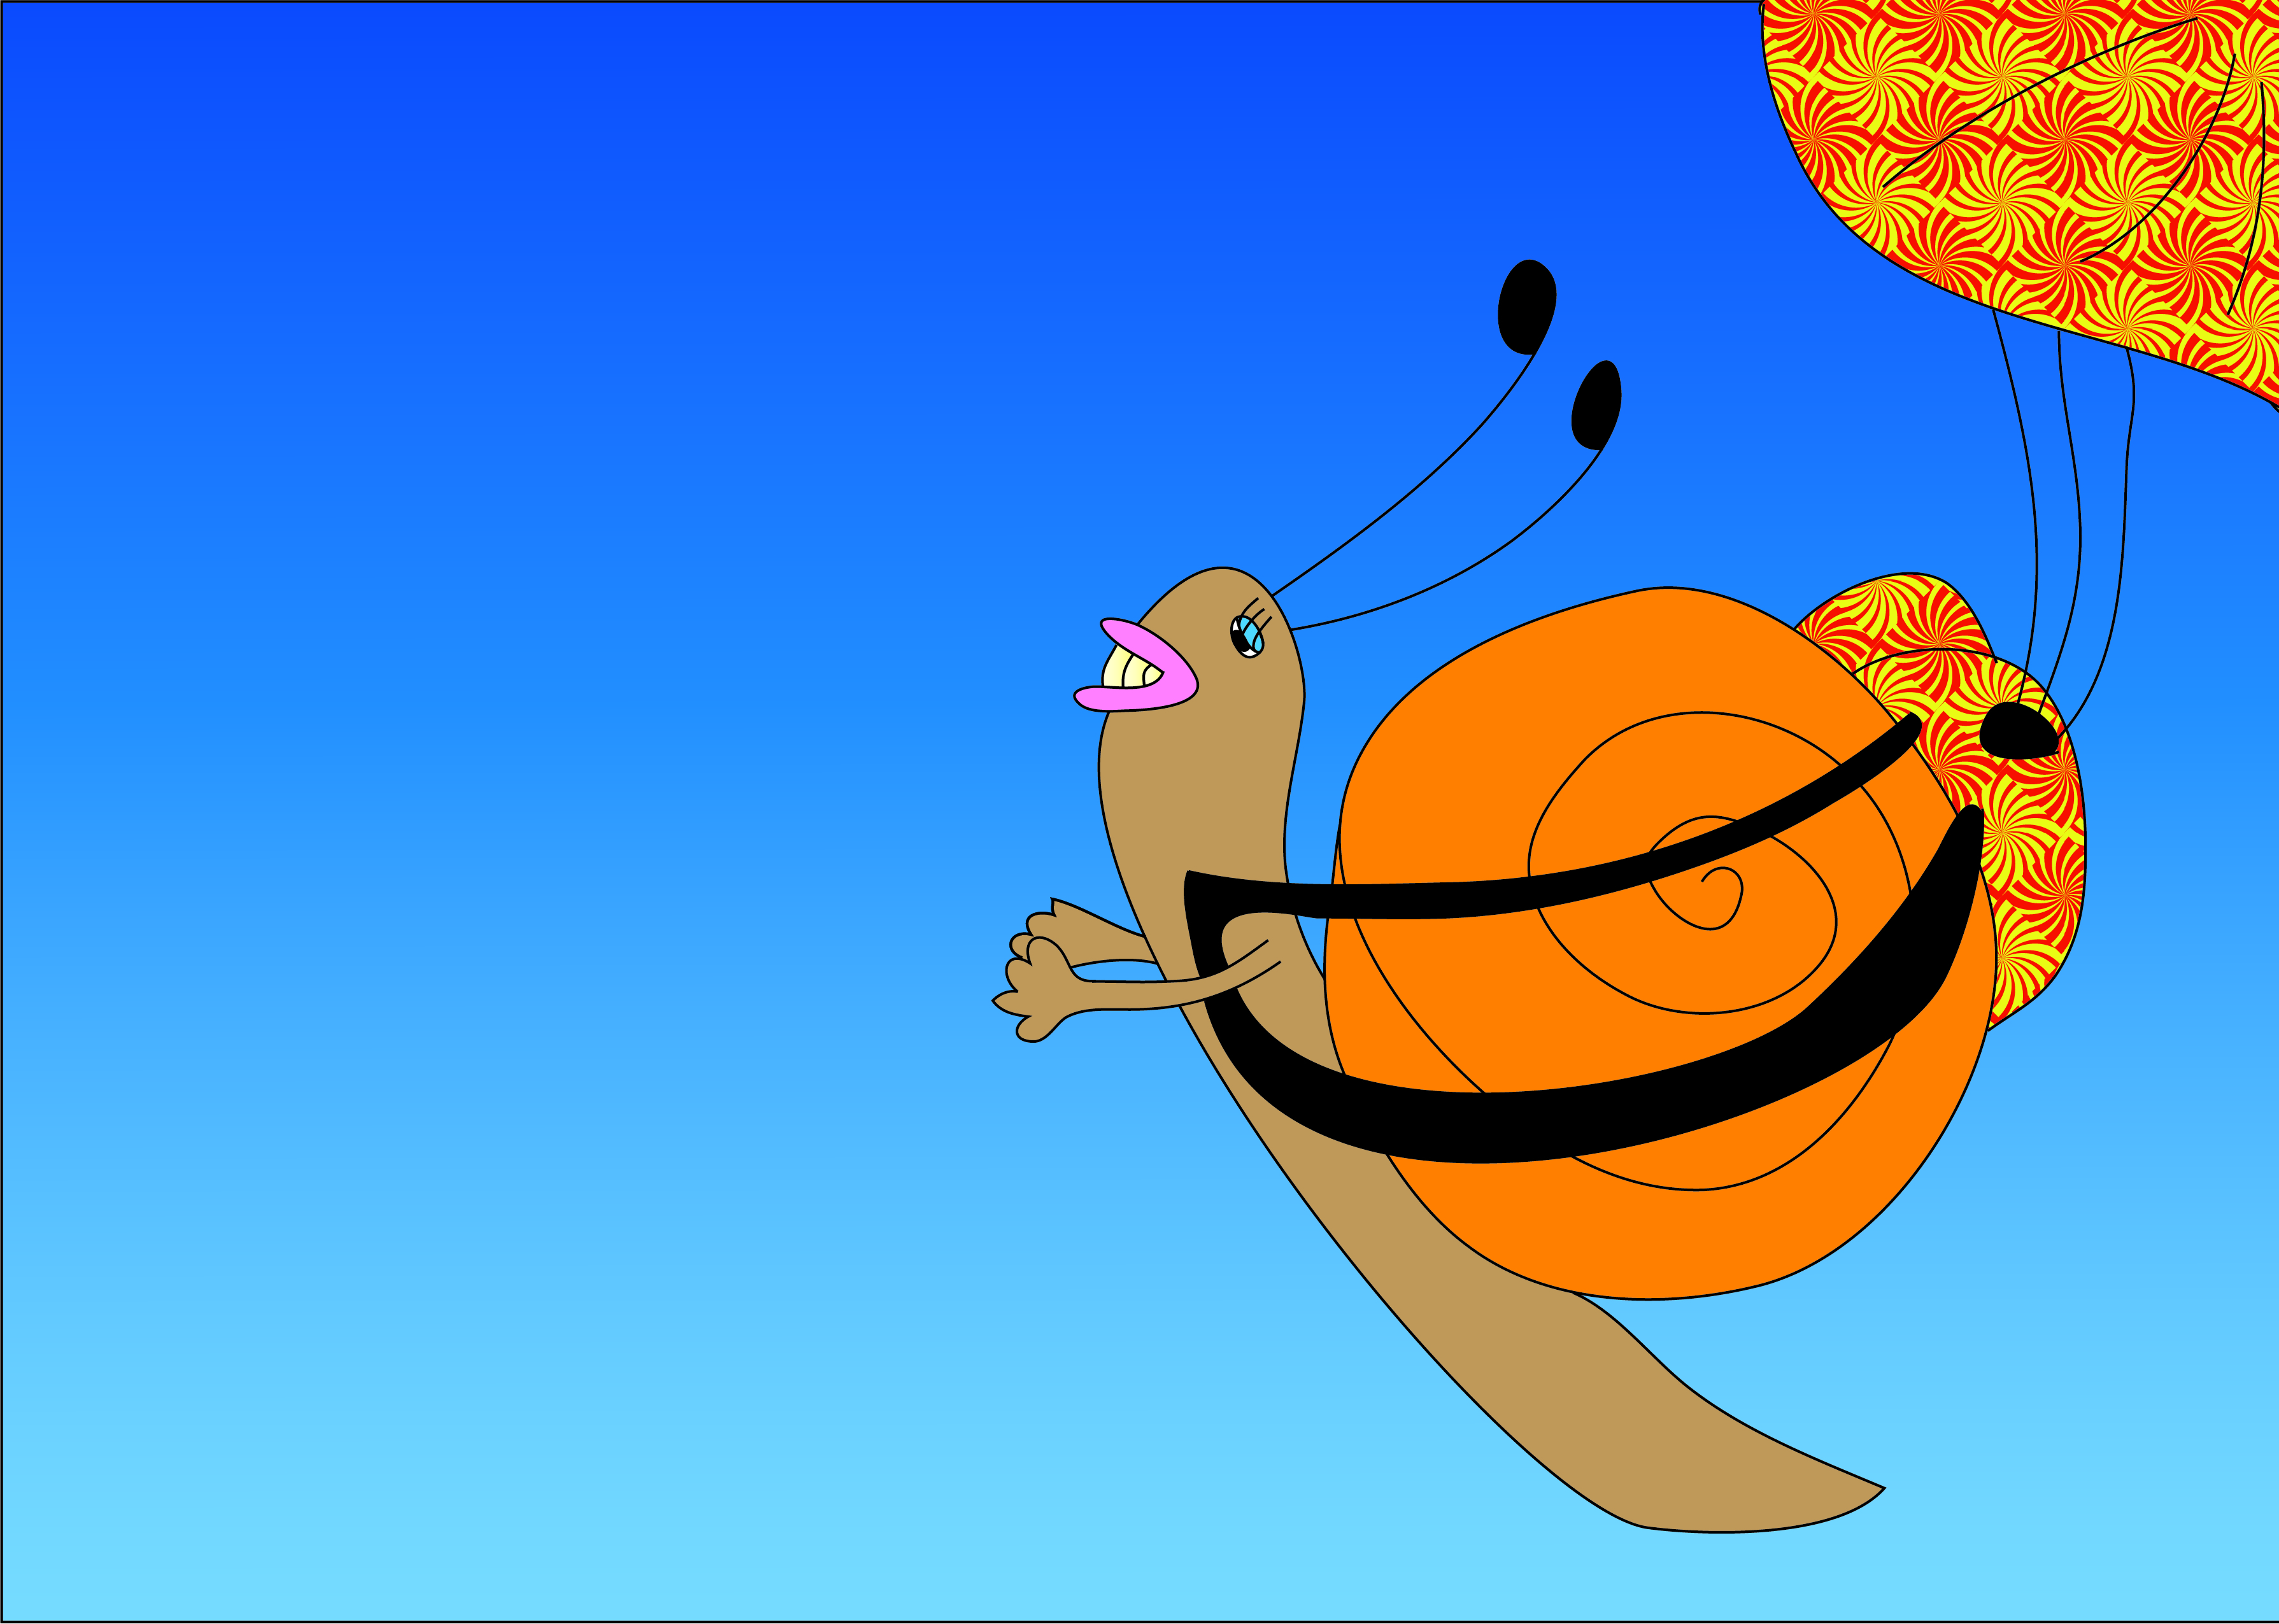 Fallschirmspringerschnecke: Illustration einer Schnecke, die Fallschirm springt